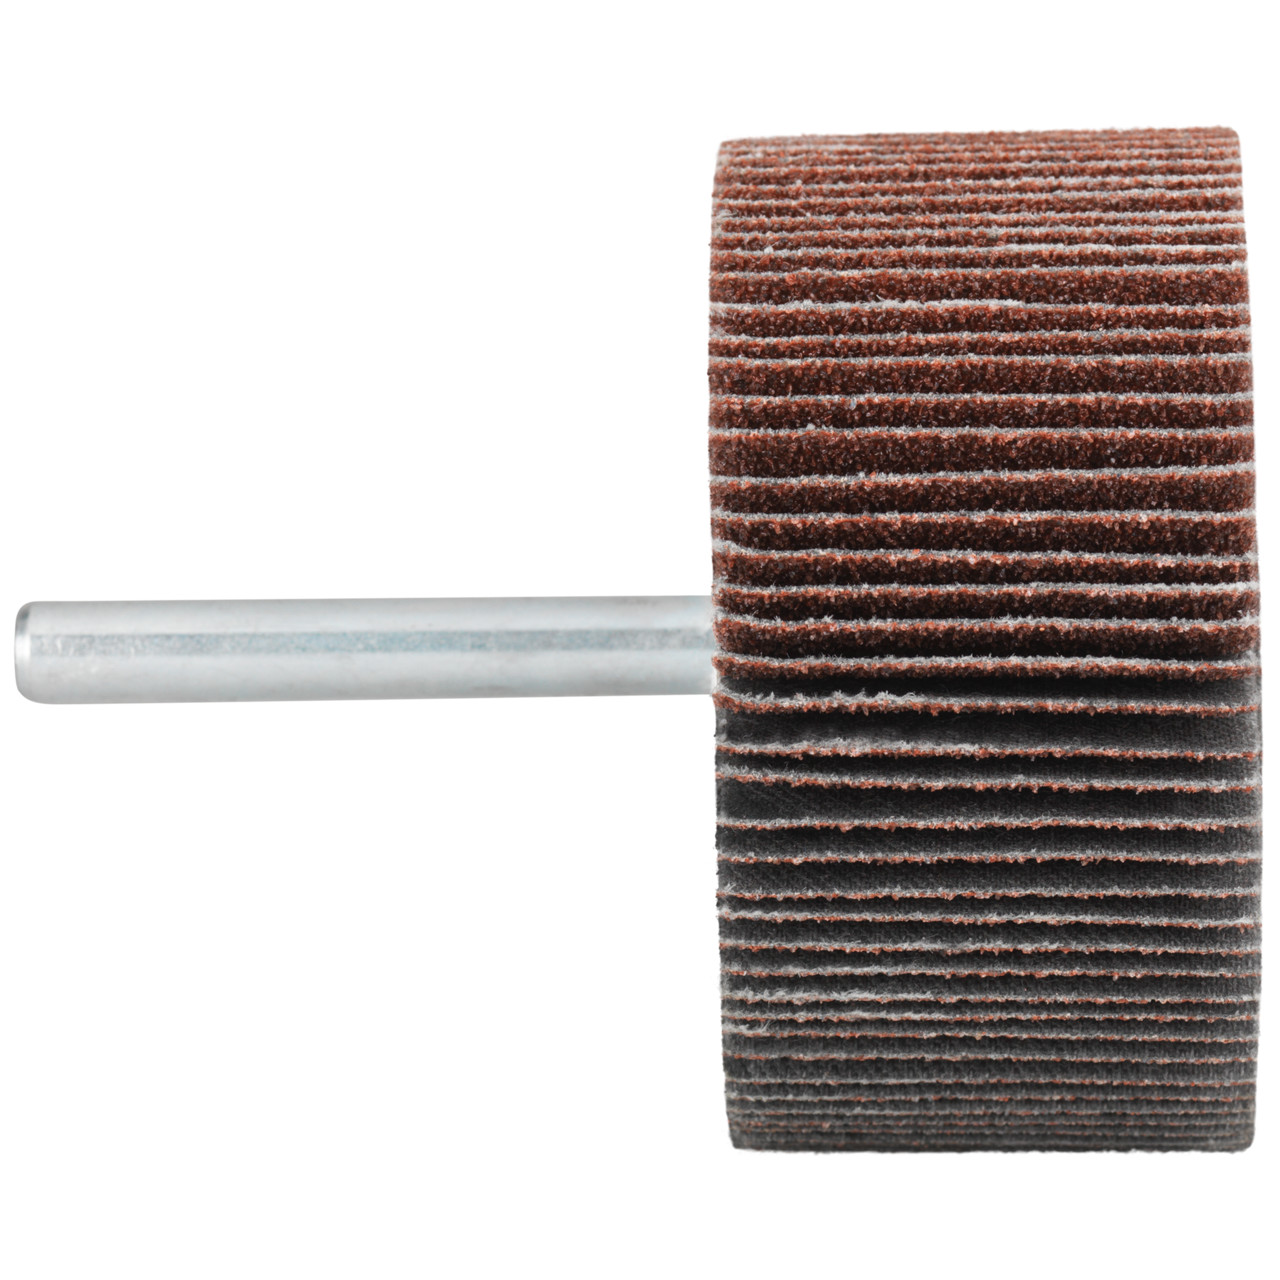 Tyrolit A-P01 C X Pennen DxD 30x10 Voor staal, roestvast staal en non-ferrometalen, P150, vorm: 52LA, Art. 816873